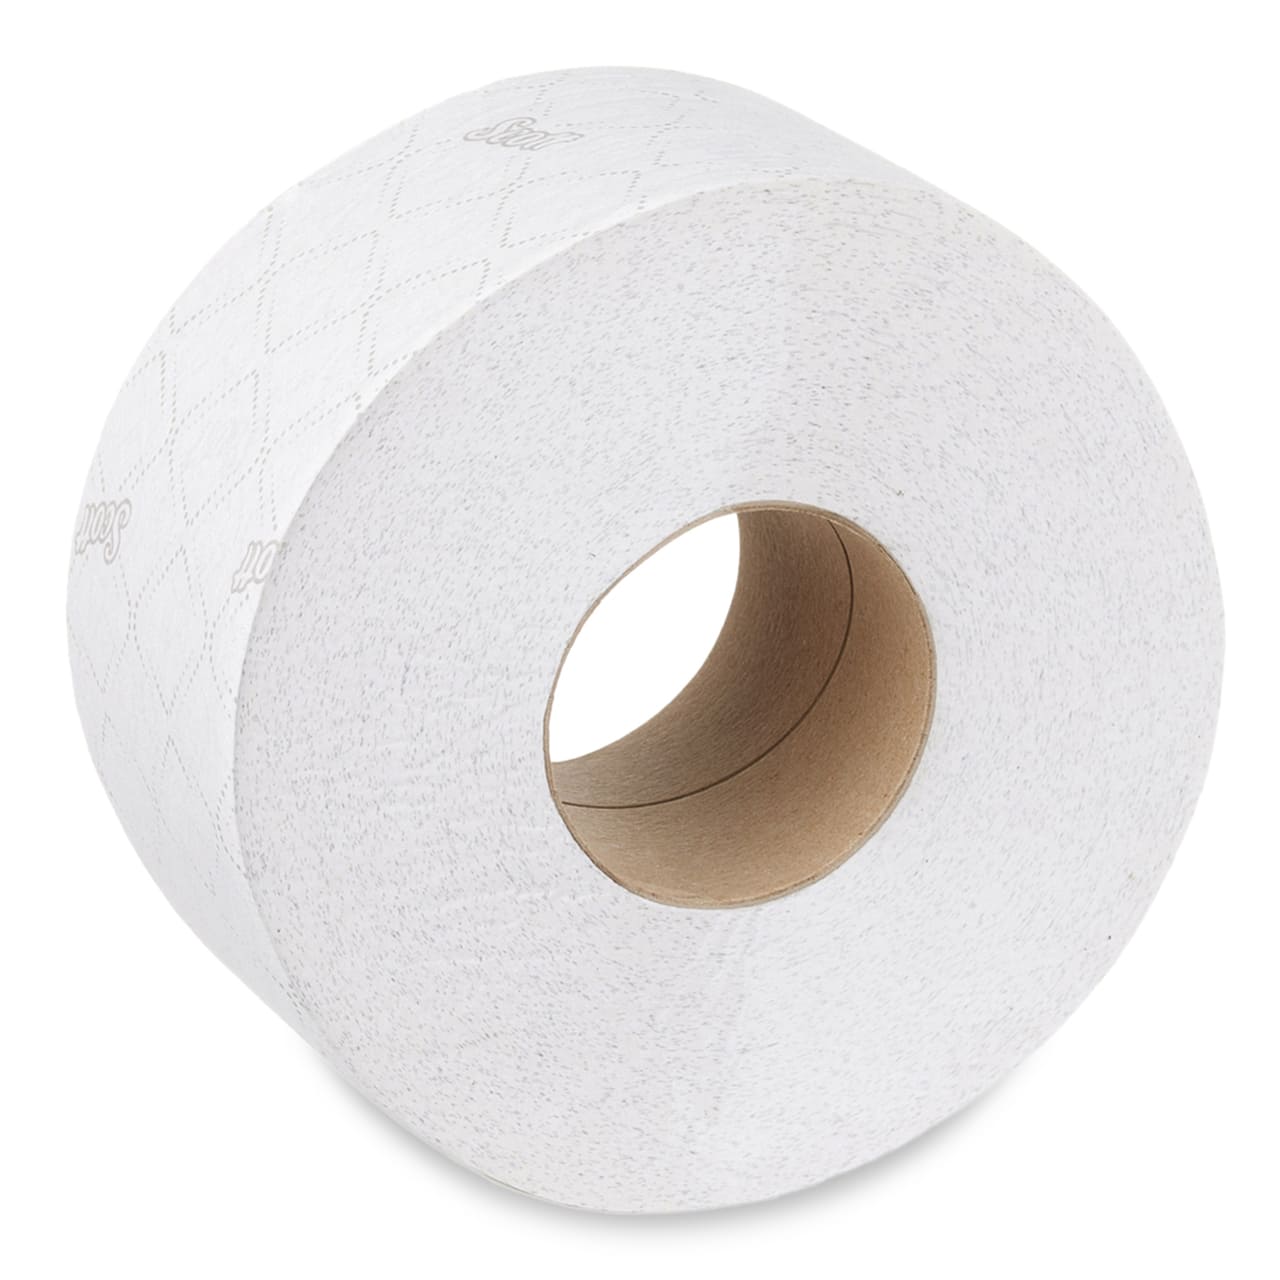 Scott® Essential™ WC-Papier - Maxi Jumbo Rolle